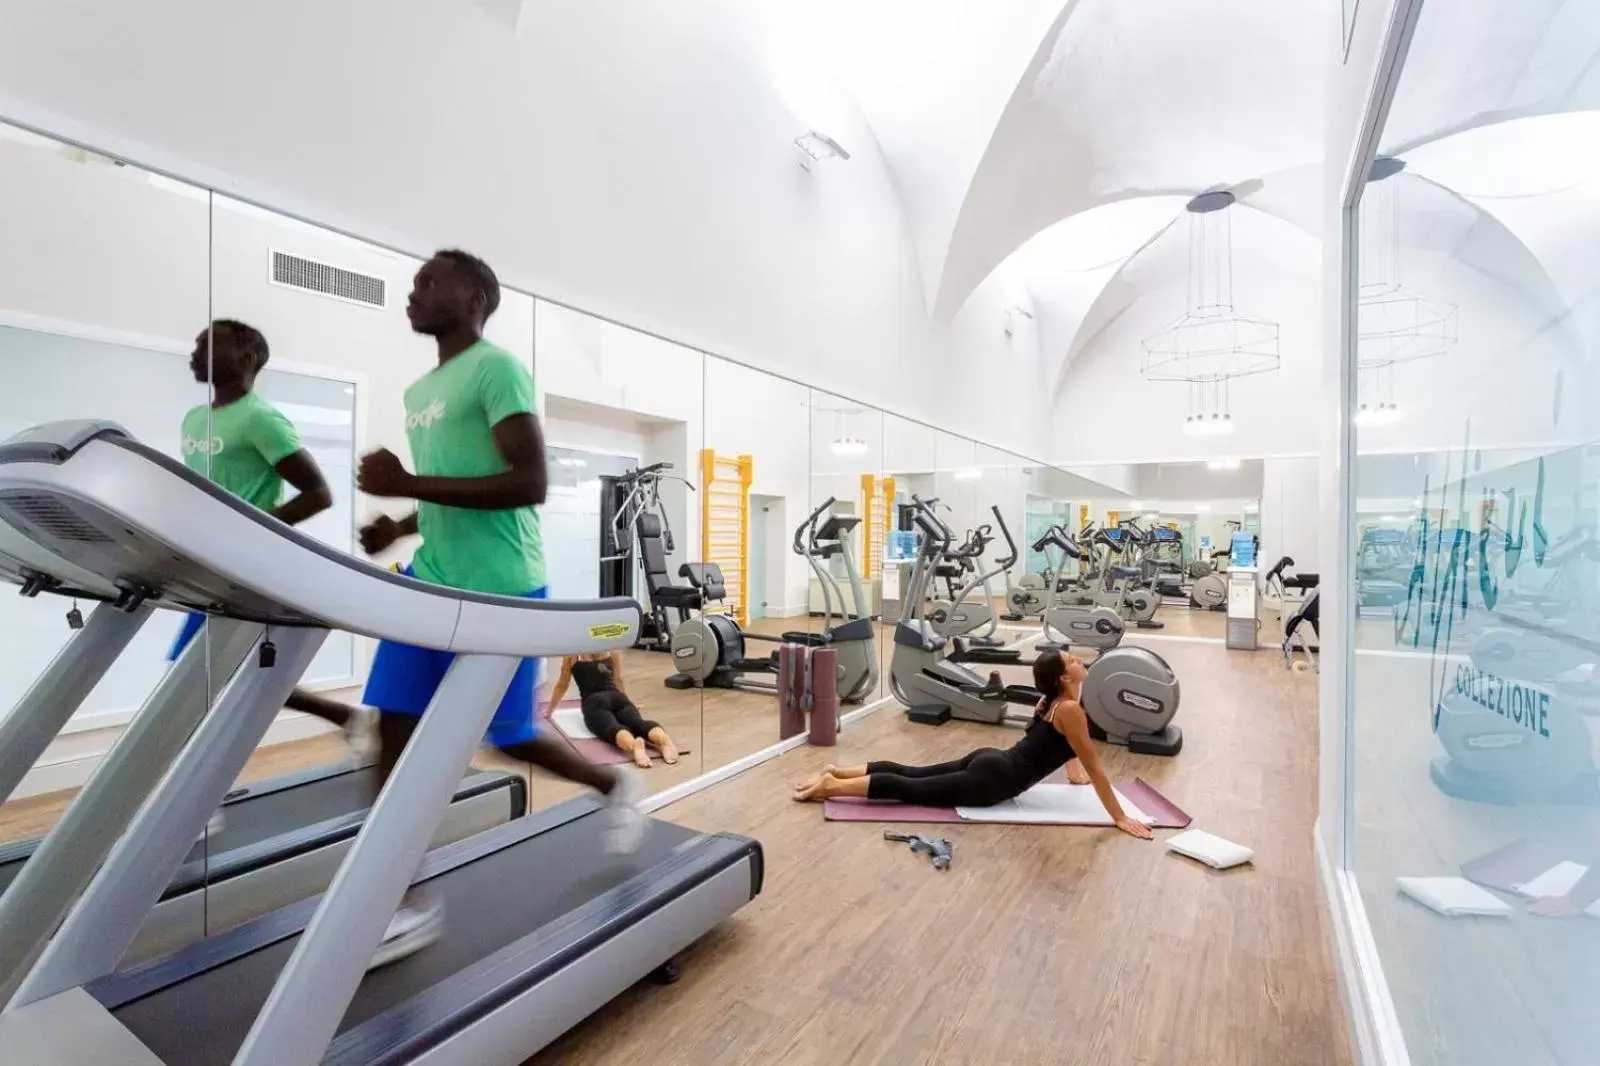 Fitness centre/facilities, Fitness Center/Facilities in Palazzo Alfieri Residenza D'Epoca - Alfieri Collezione